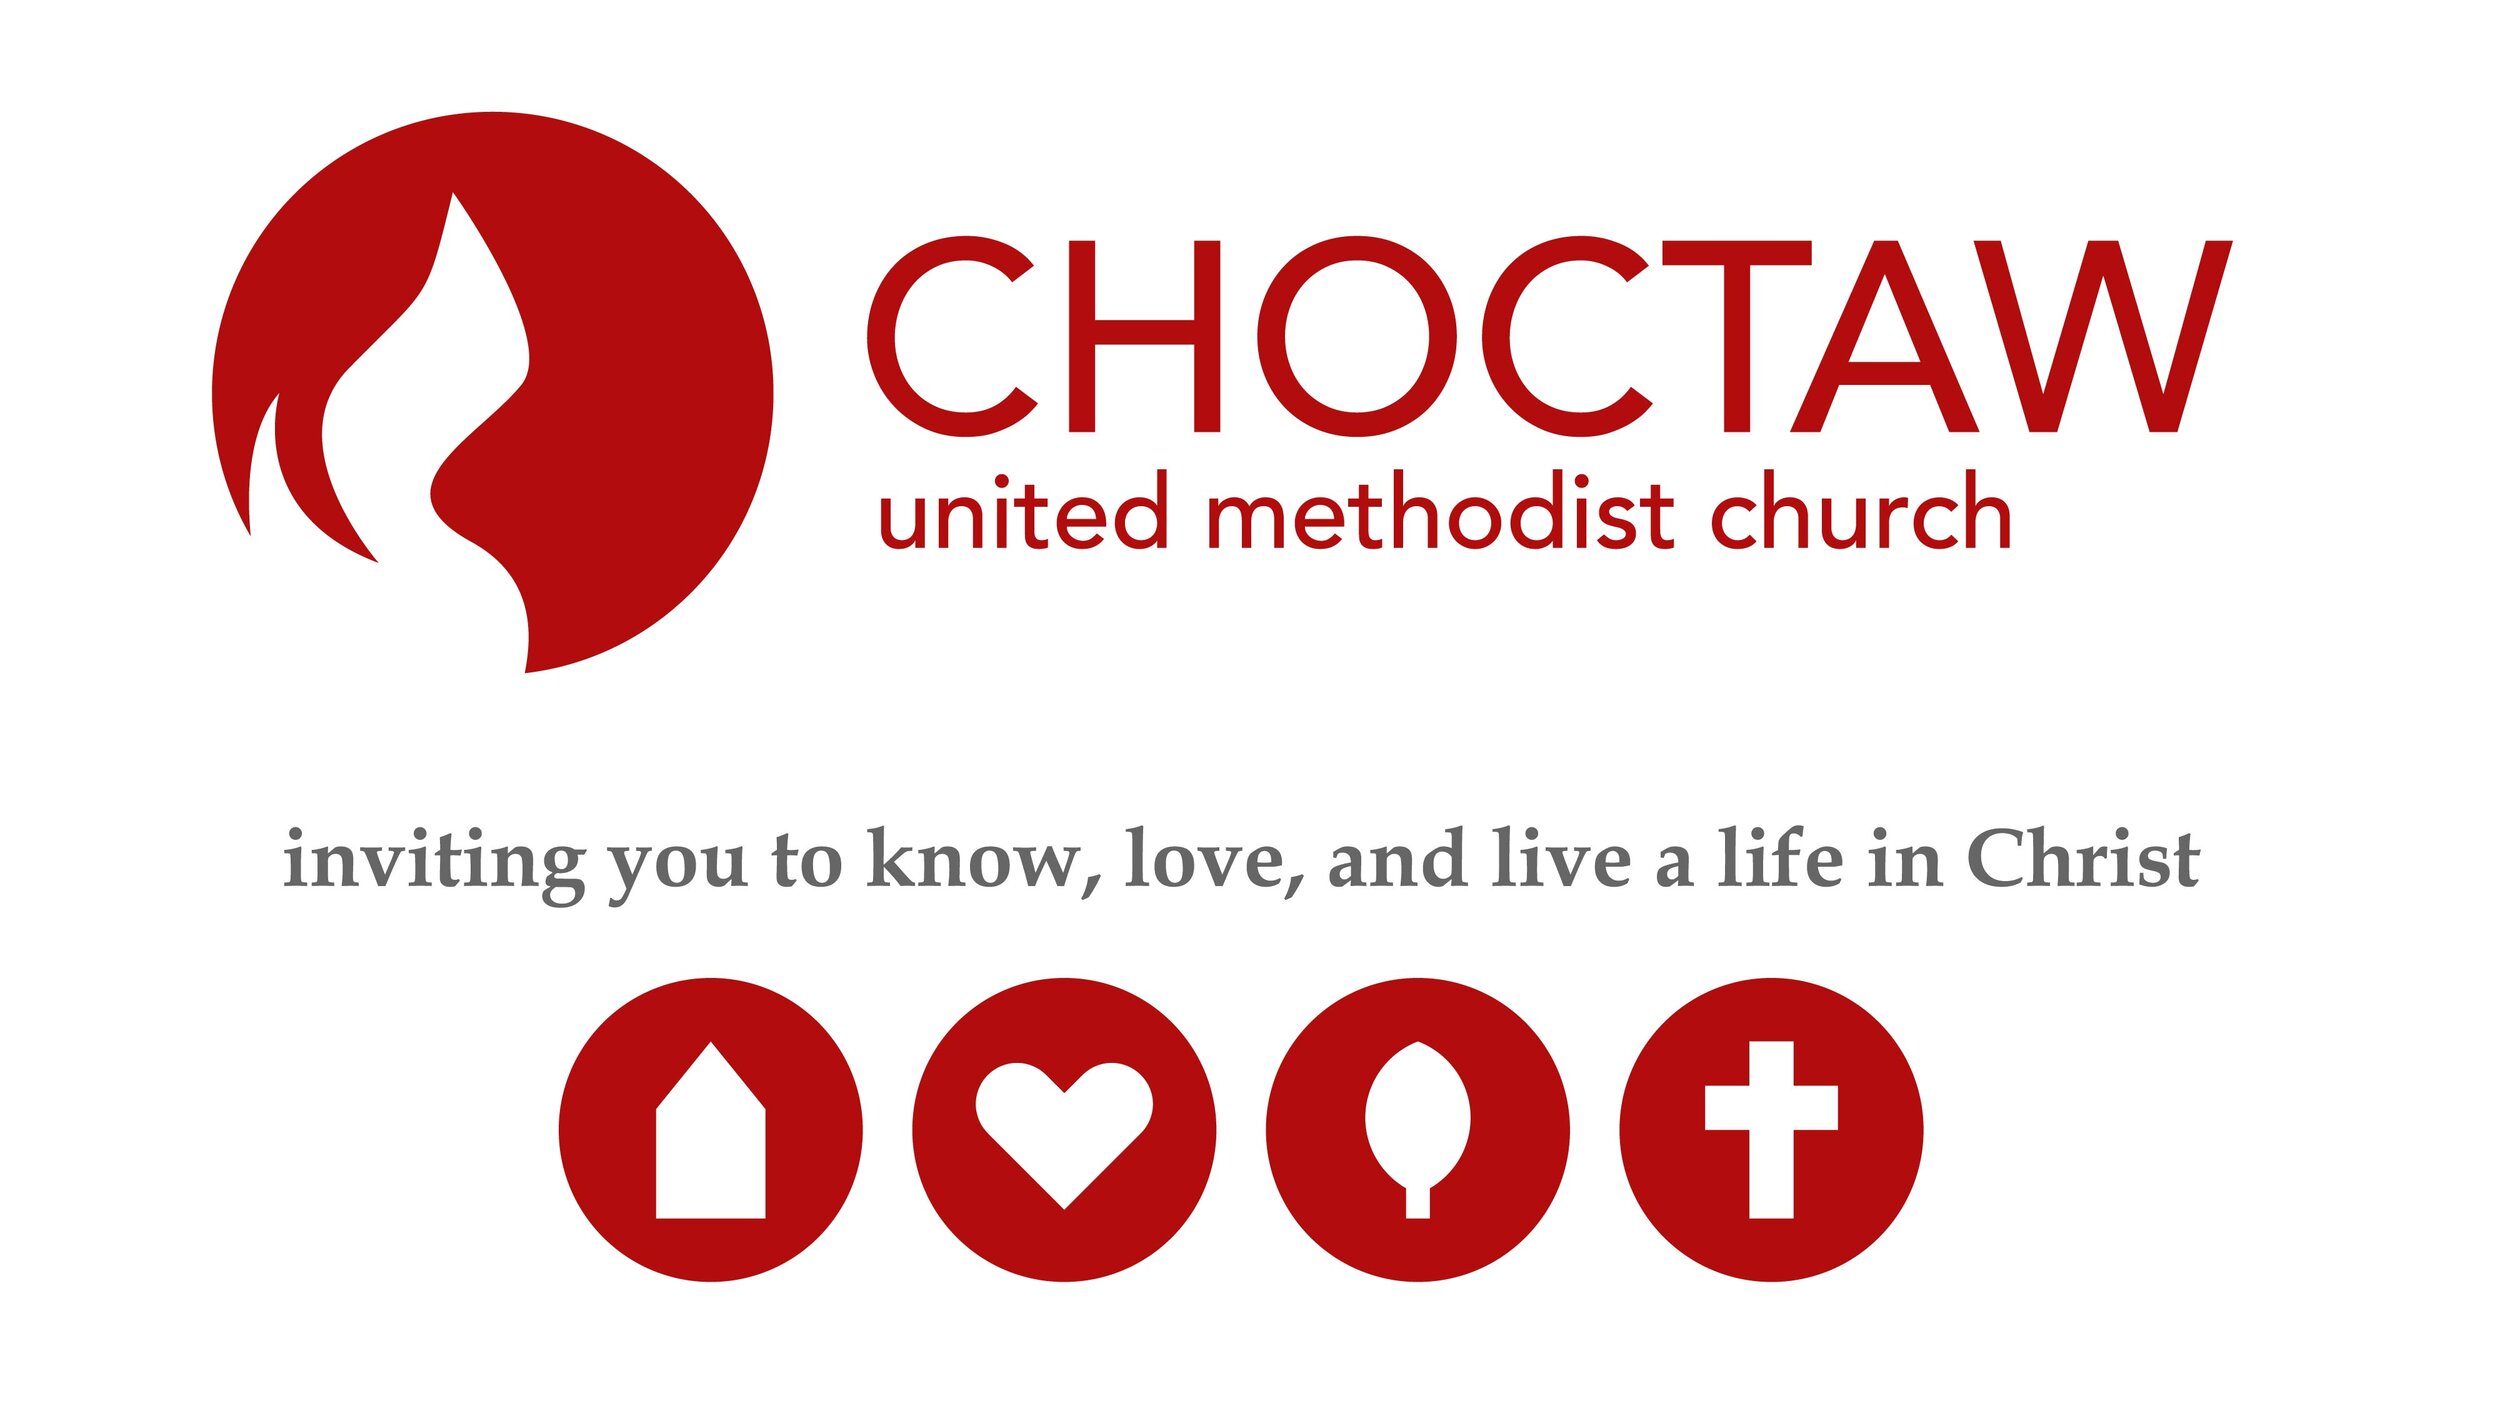 Choctaw United Methodist Church (concept)